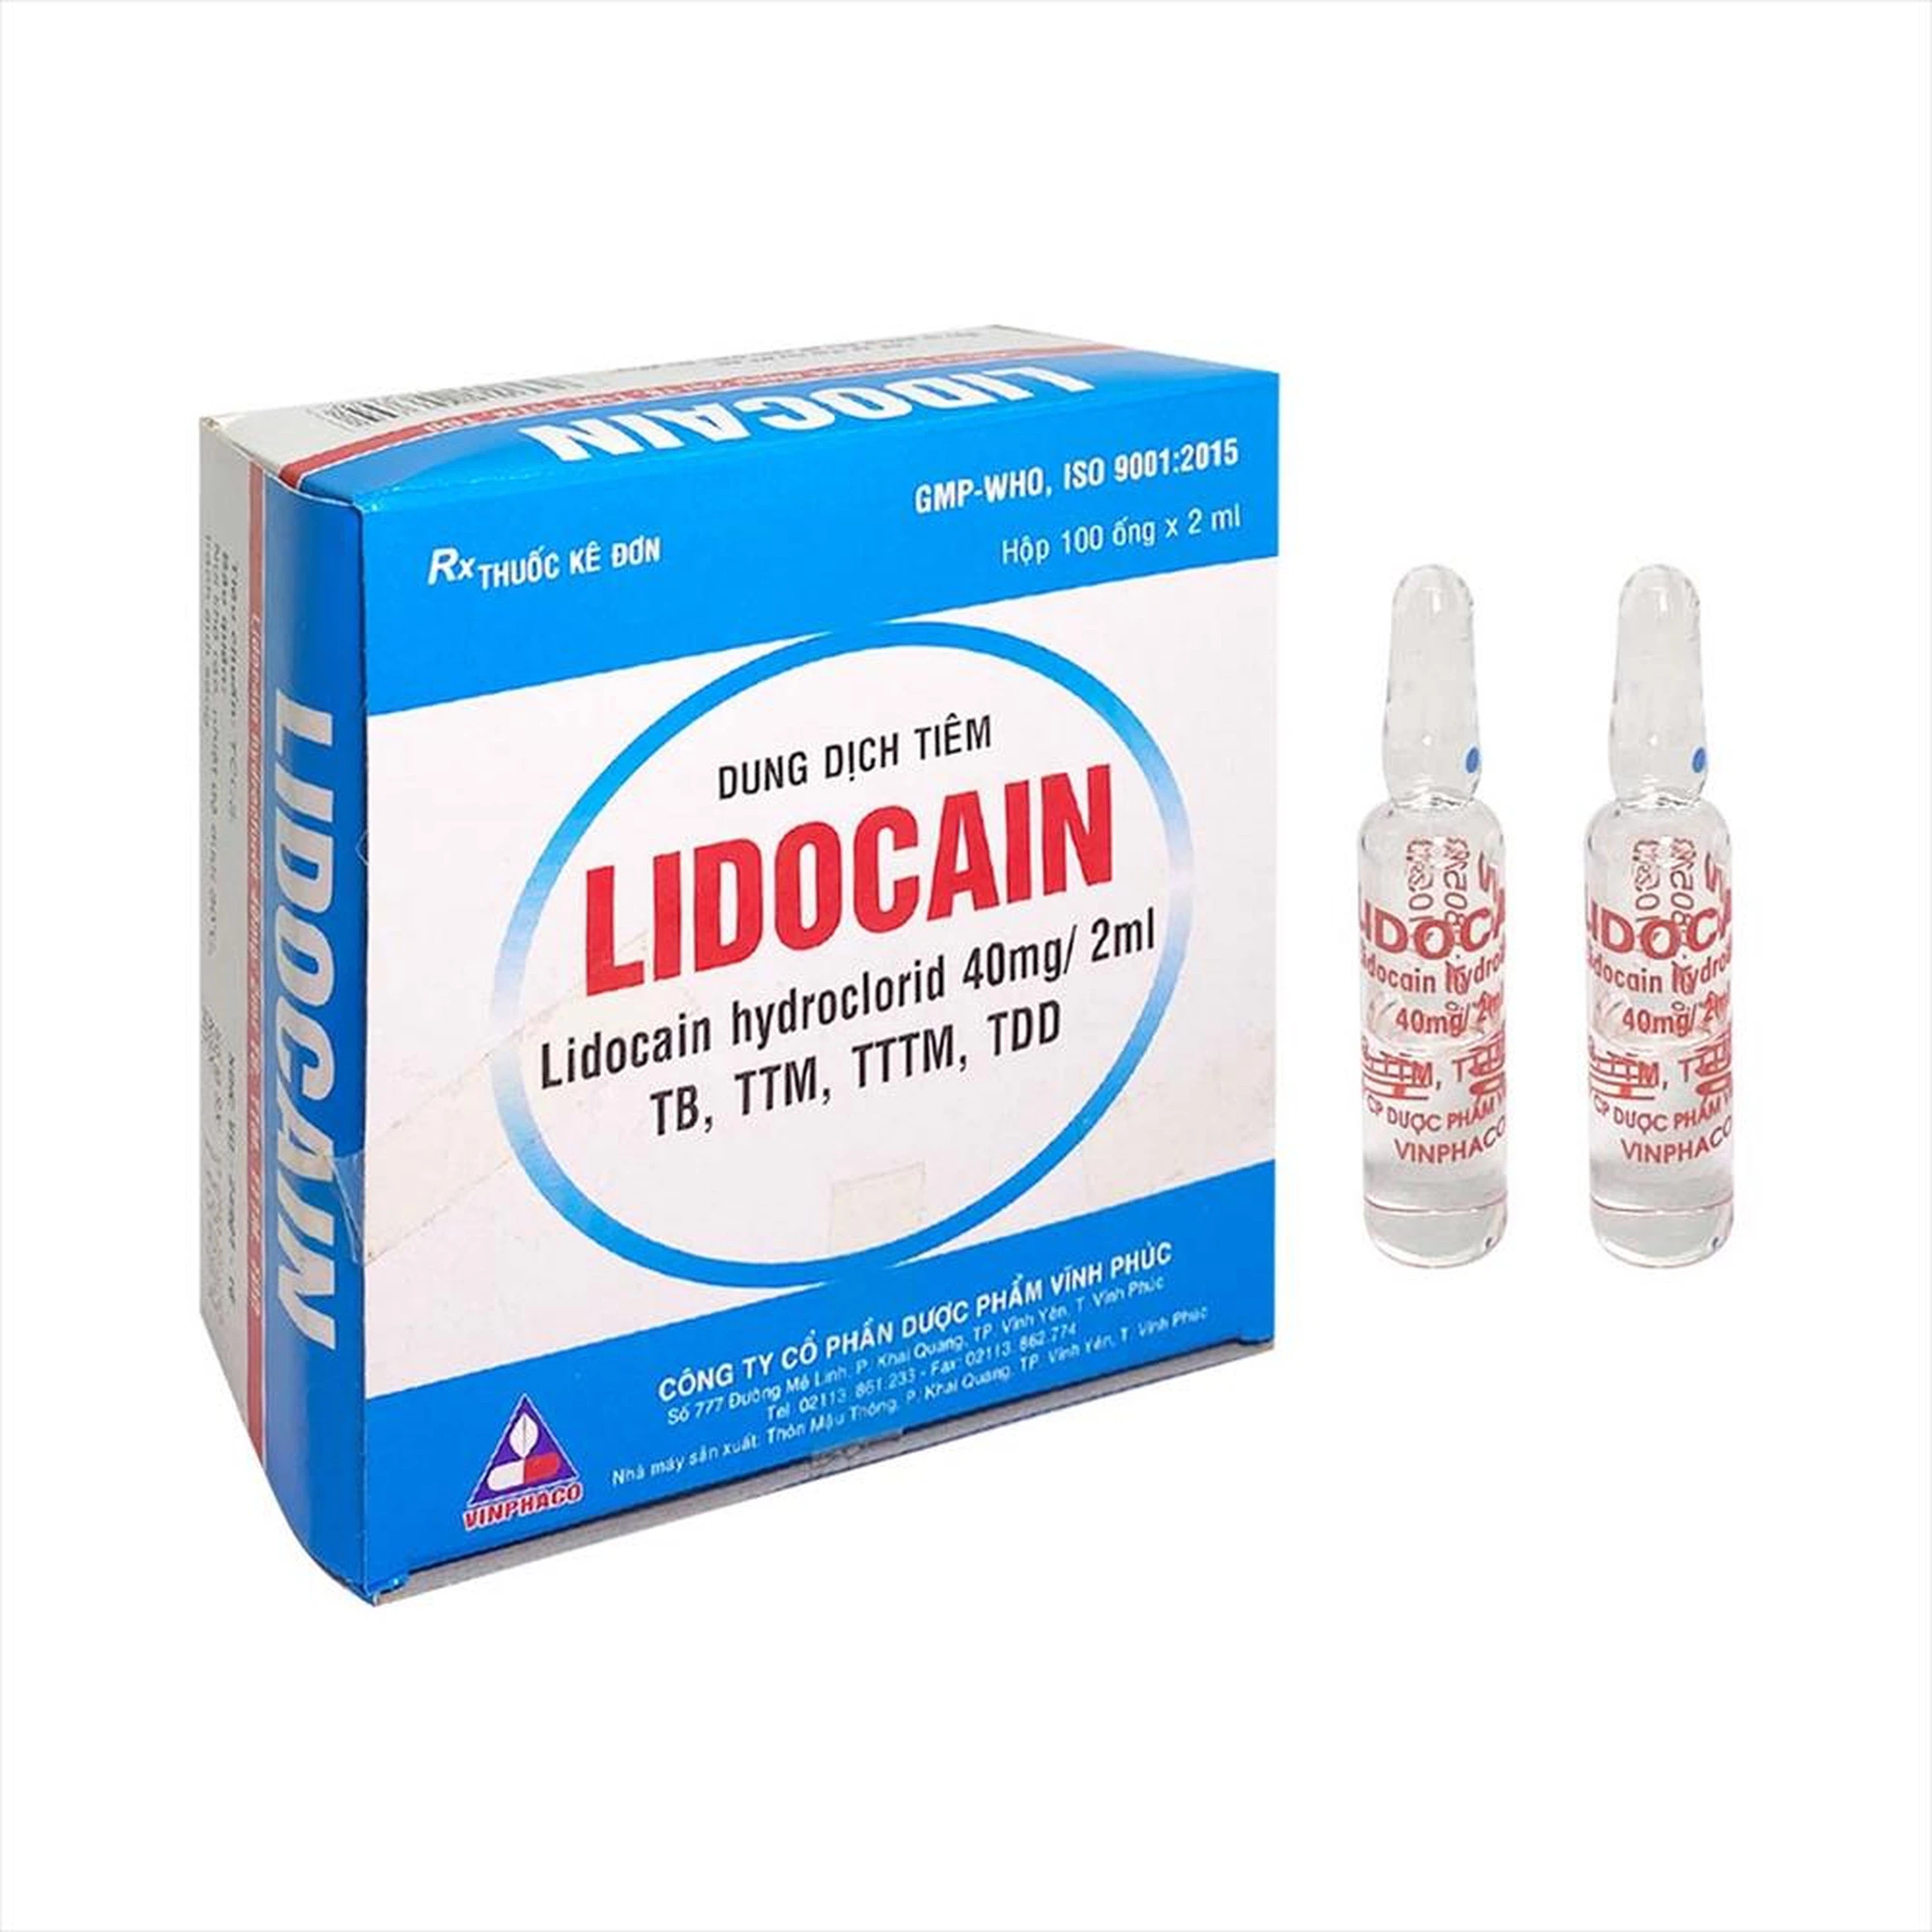 Dung dịch tiêm Lidocain 40mg/2ml Vinphaco gây tê tại chỗ niêm mạc trước (100 ống x 2ml)